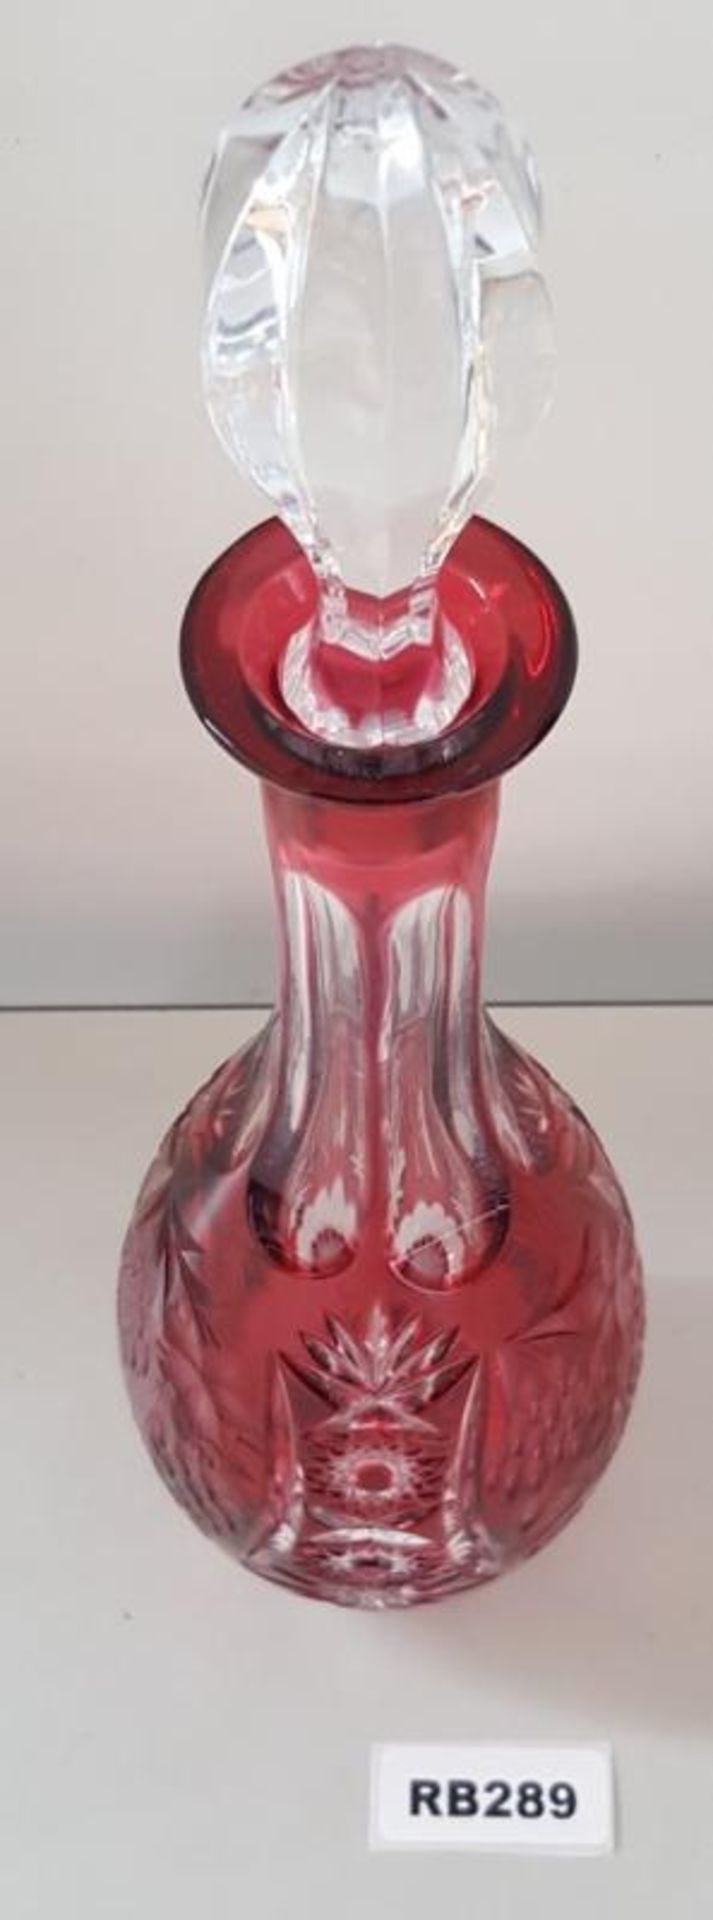 1 x Bohemian Antique Cranberry Cut Glass Decanter H39cm - Ref RB289 E - CL334 - Location: Altrincham - Image 4 of 4